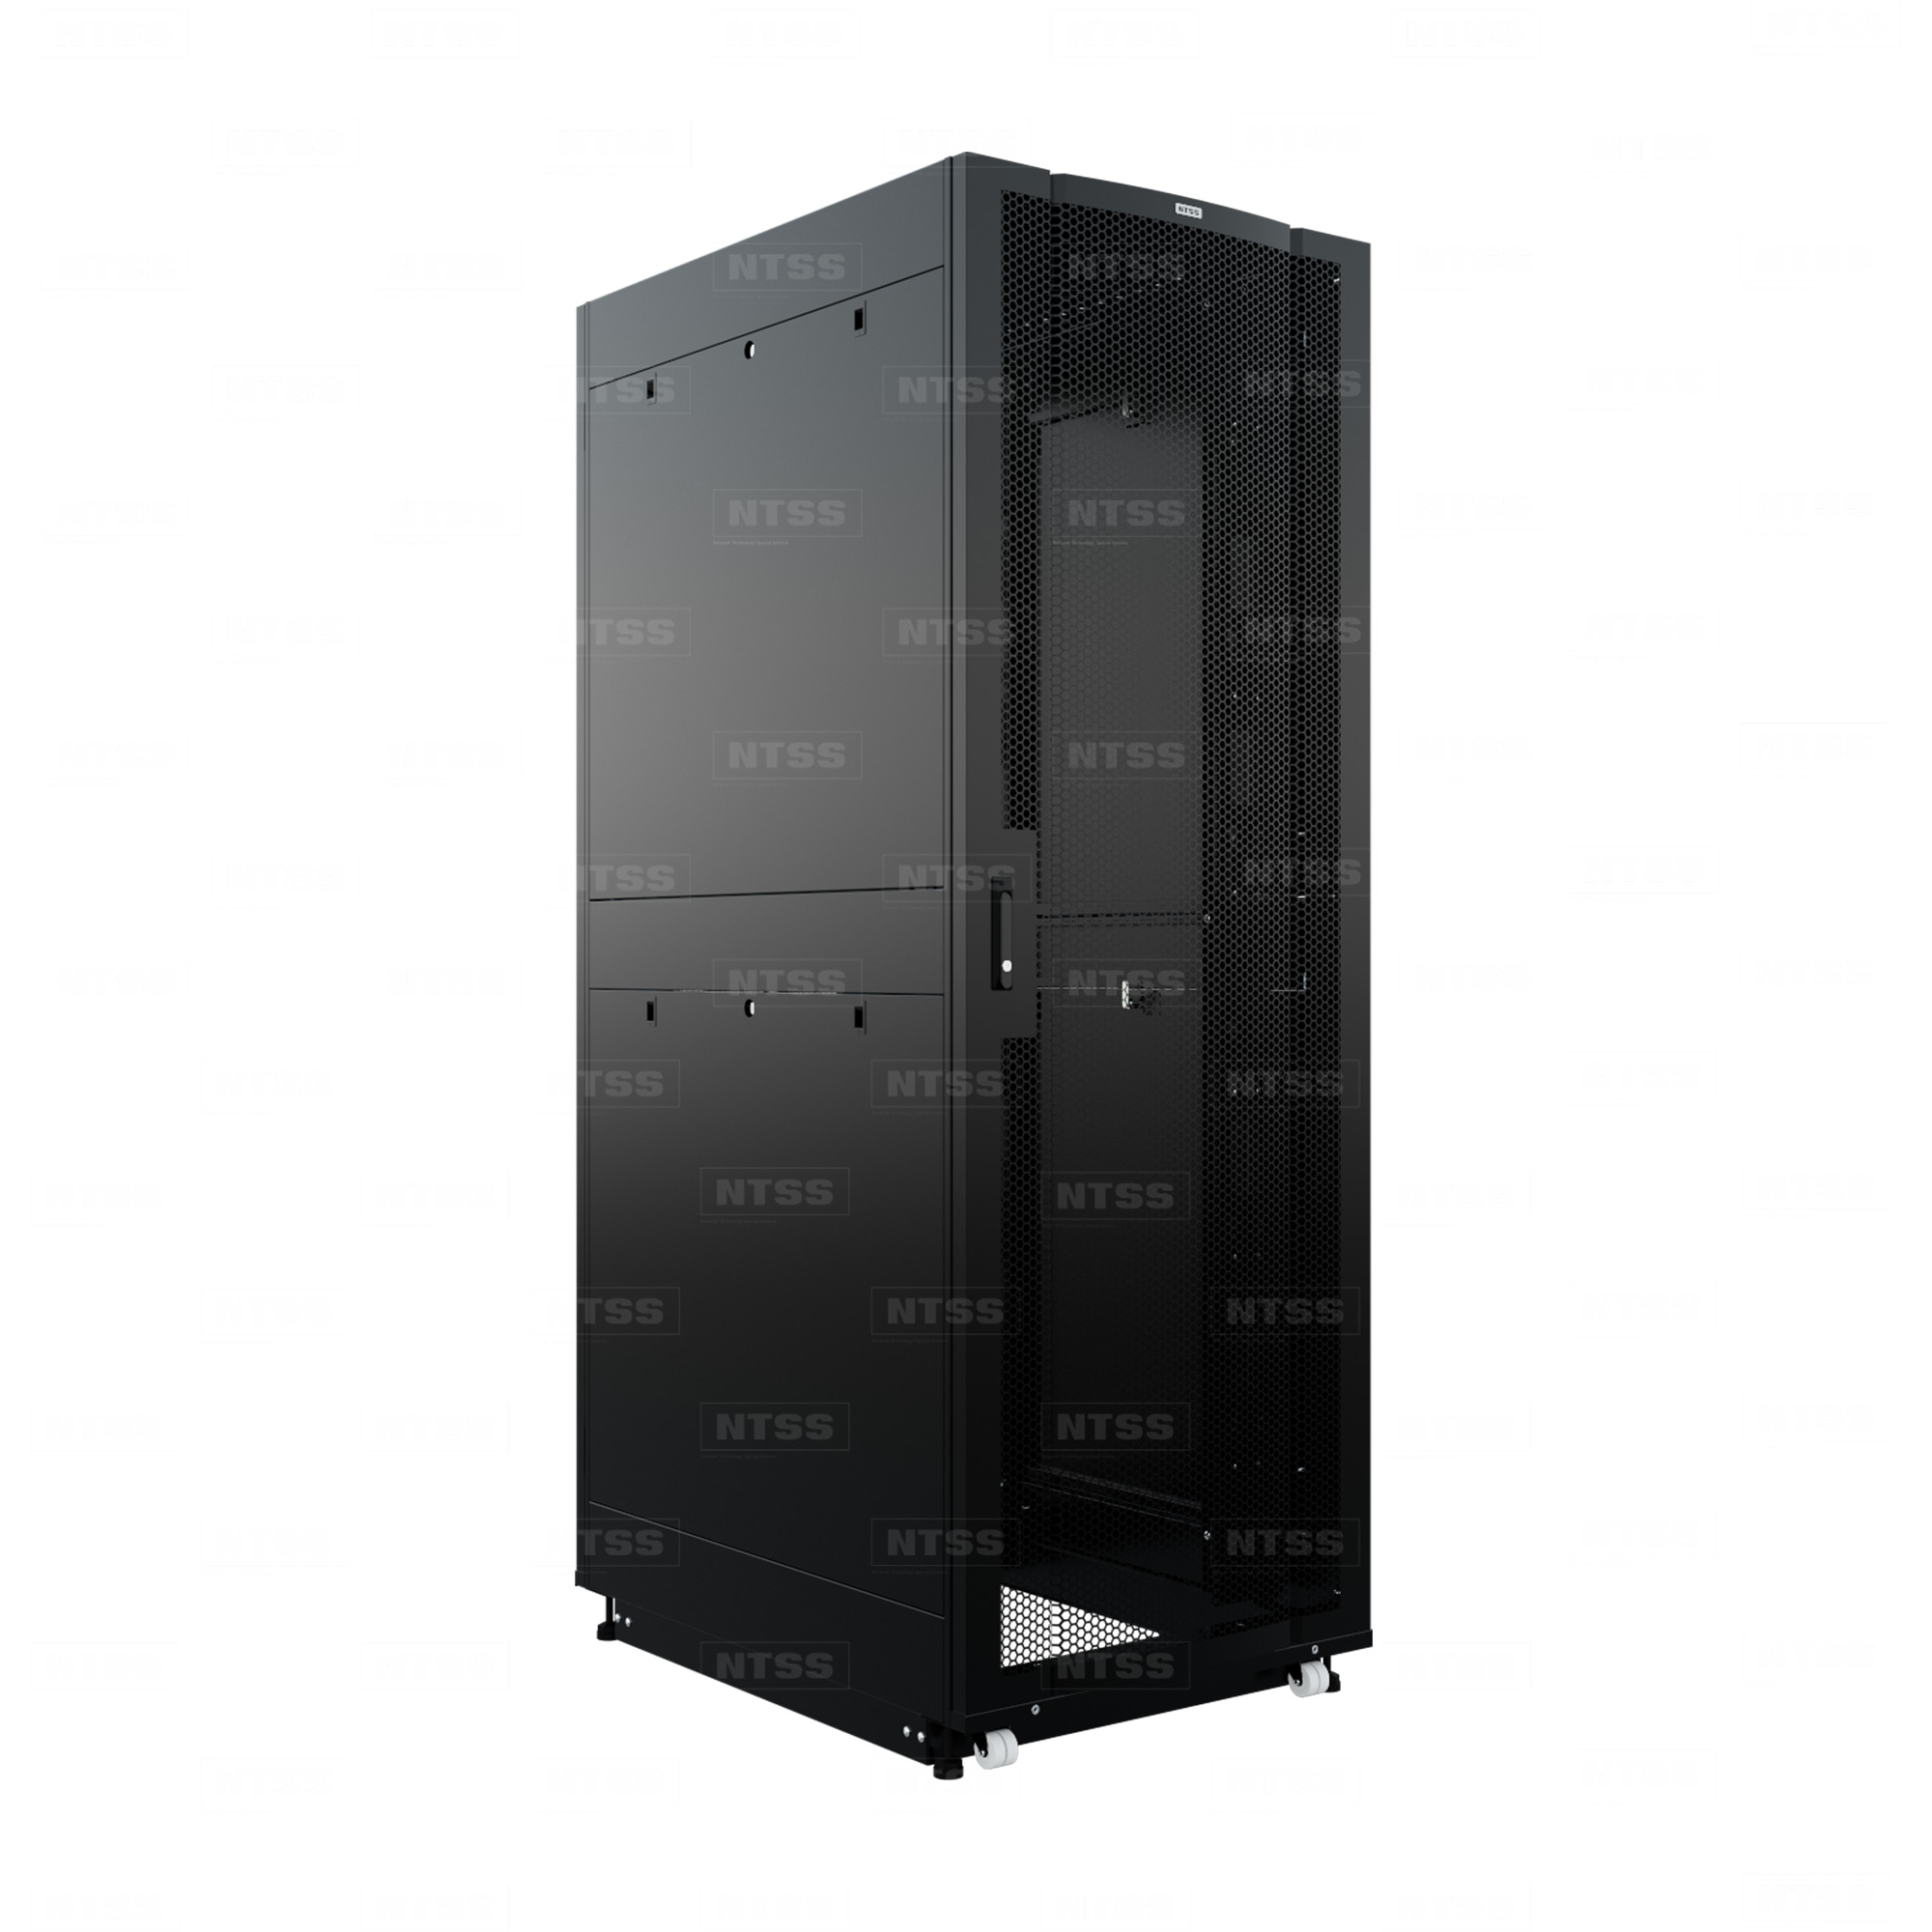 19" Напольный серверный шкаф NTSS ПРОЦОД PC 42U 800х1070 мм, передняя дверь перфорация, задняя дверь распашная двойная перфорированная, боковые стенки, регулируемые опоры, ролики, черный RAL 9005  